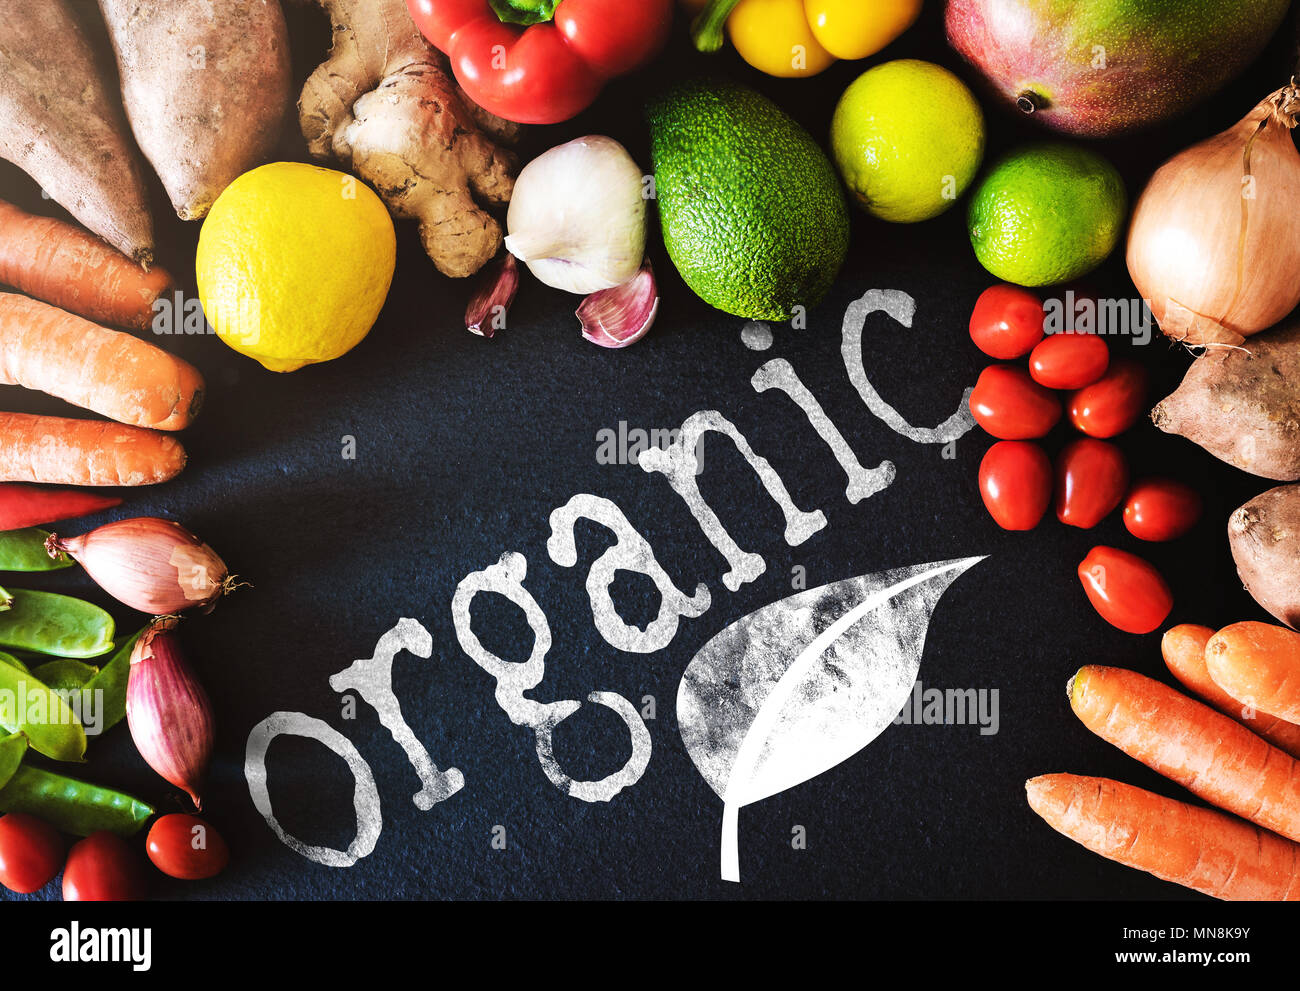 Directamente encima de acercamiento de verduras y frutas frescas orgánicas sobre fondo de pizarra con word organic Foto de stock